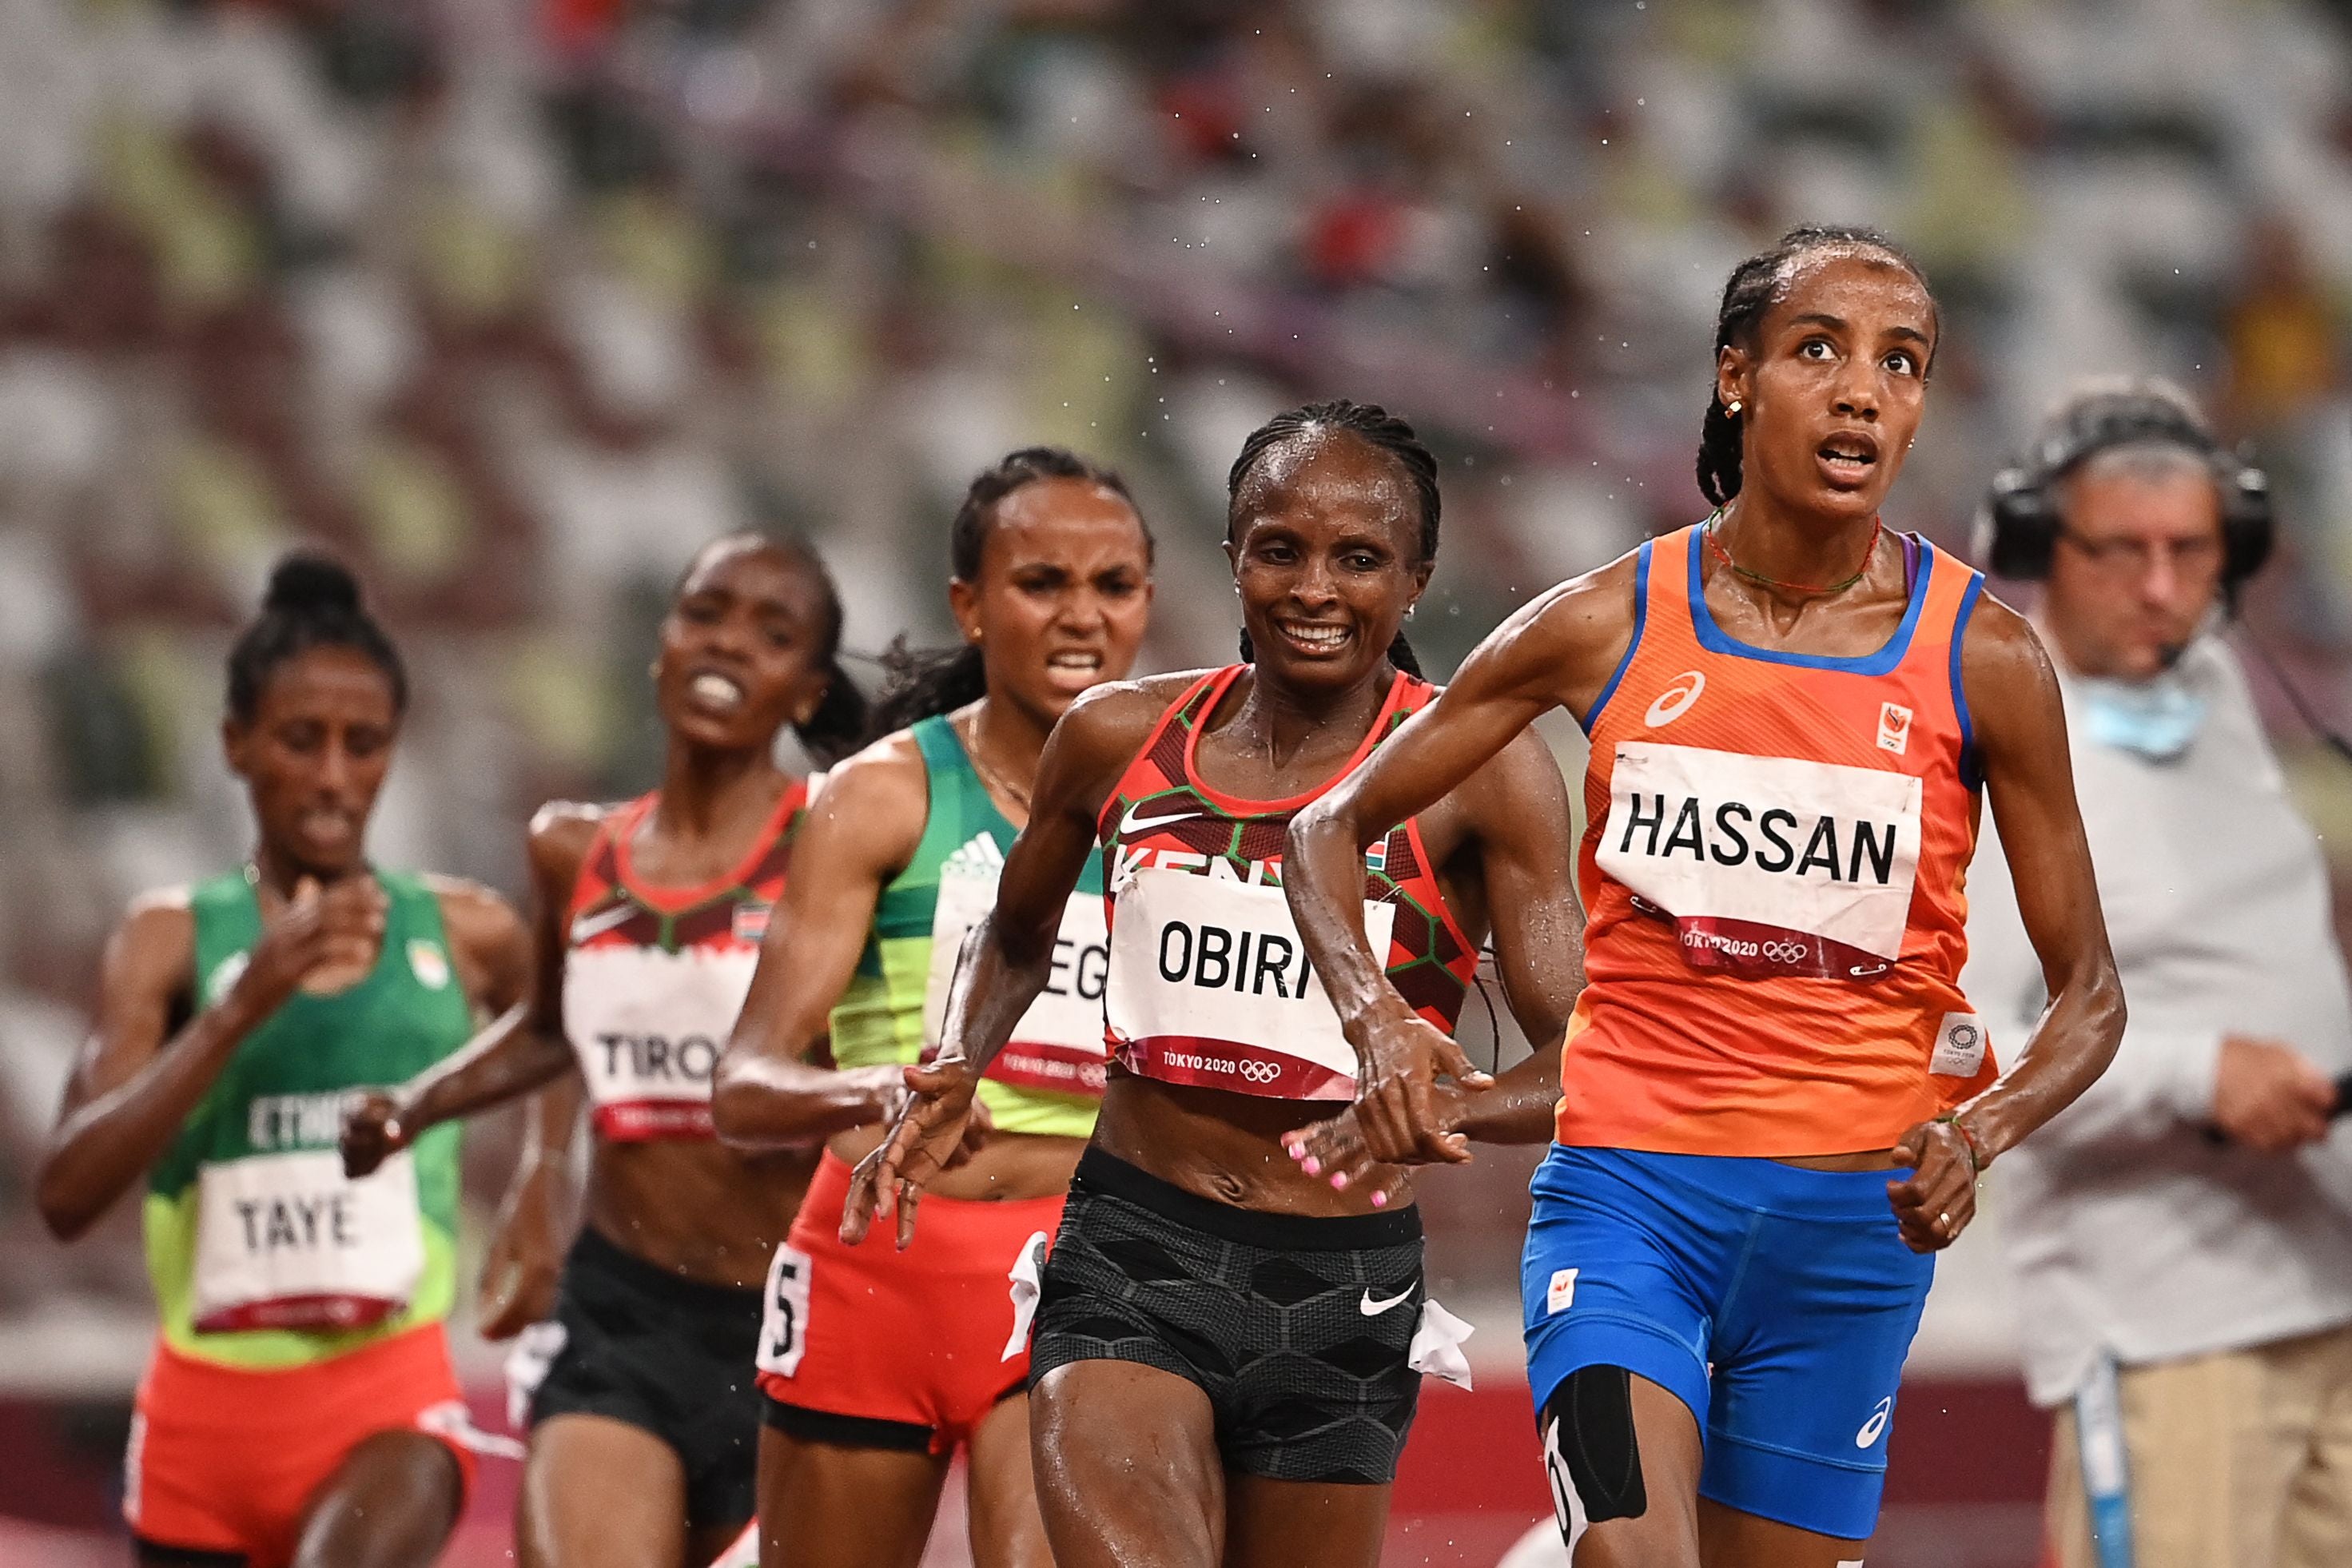 Dutch runner Hassan wins women's 5,000m gold at Tokyo Olympics